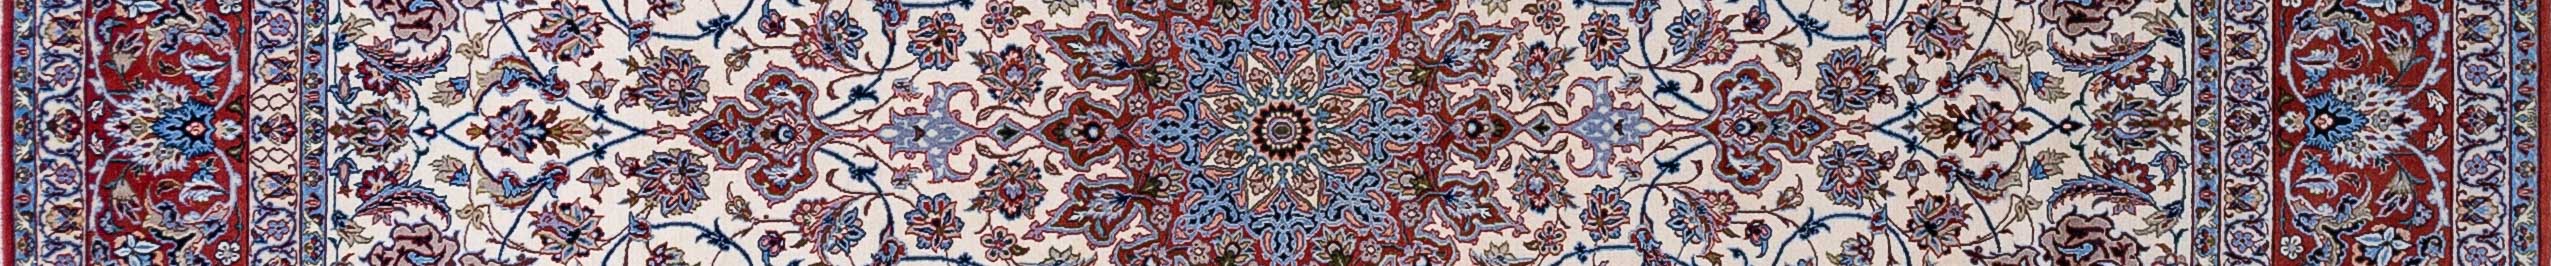 Isfahan Persian Carpet Rug N1Carpet Canada Montreal Tapis Persan 6500